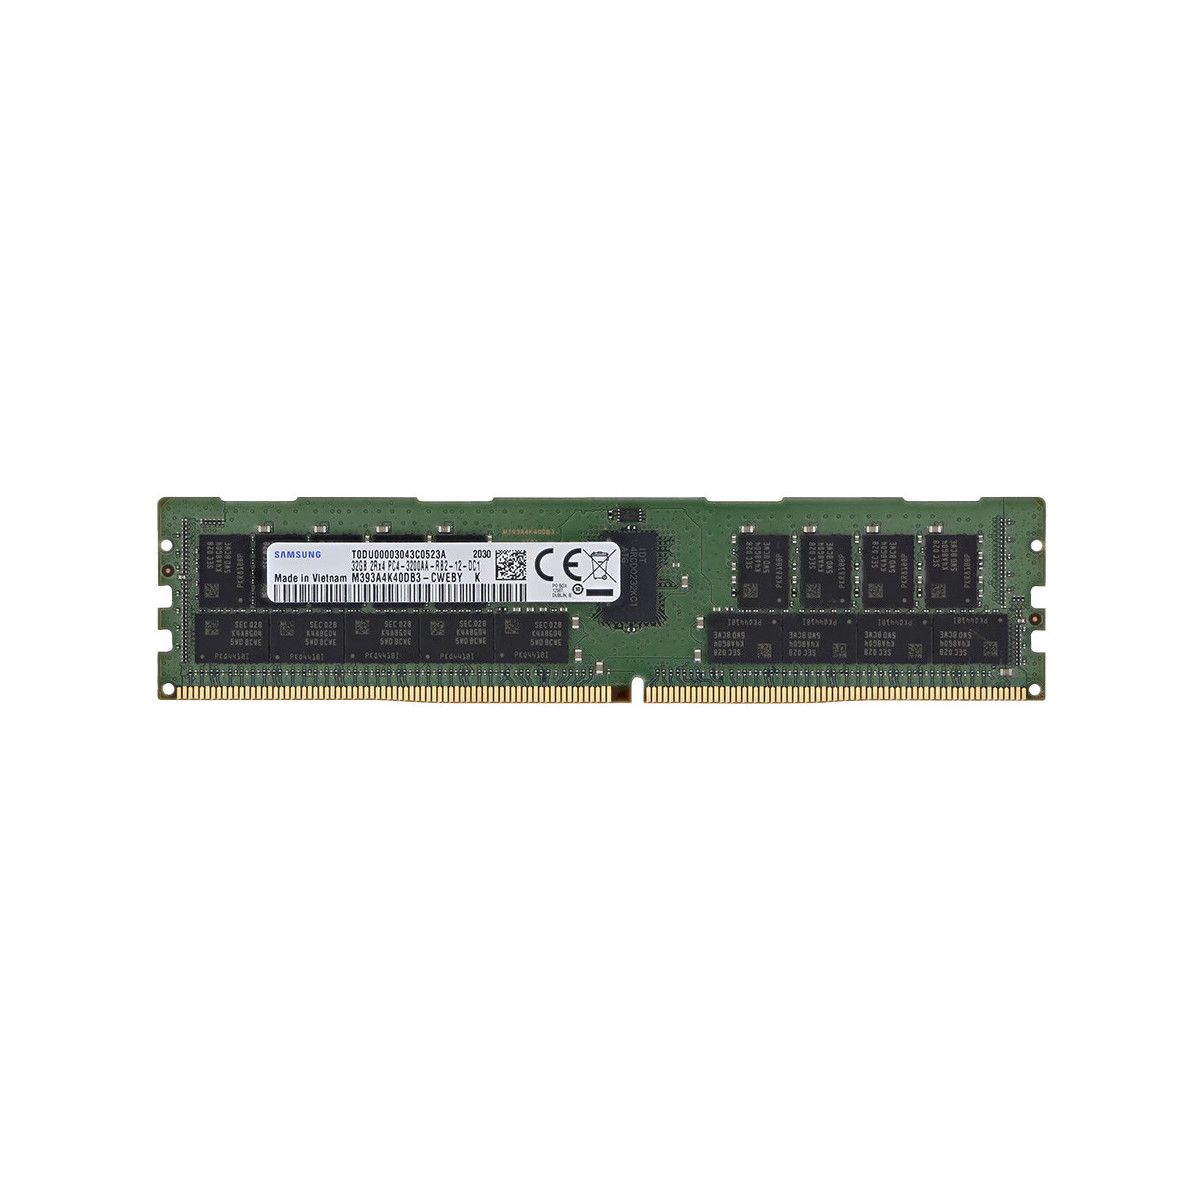 SNP75X1VC/32VXR-MS - Memstar 1x 32GB DDR4-3200 RDIMM PC4-25600R - Mem-Star Kompatibel OEM Speichermedien 1 - Memstar 